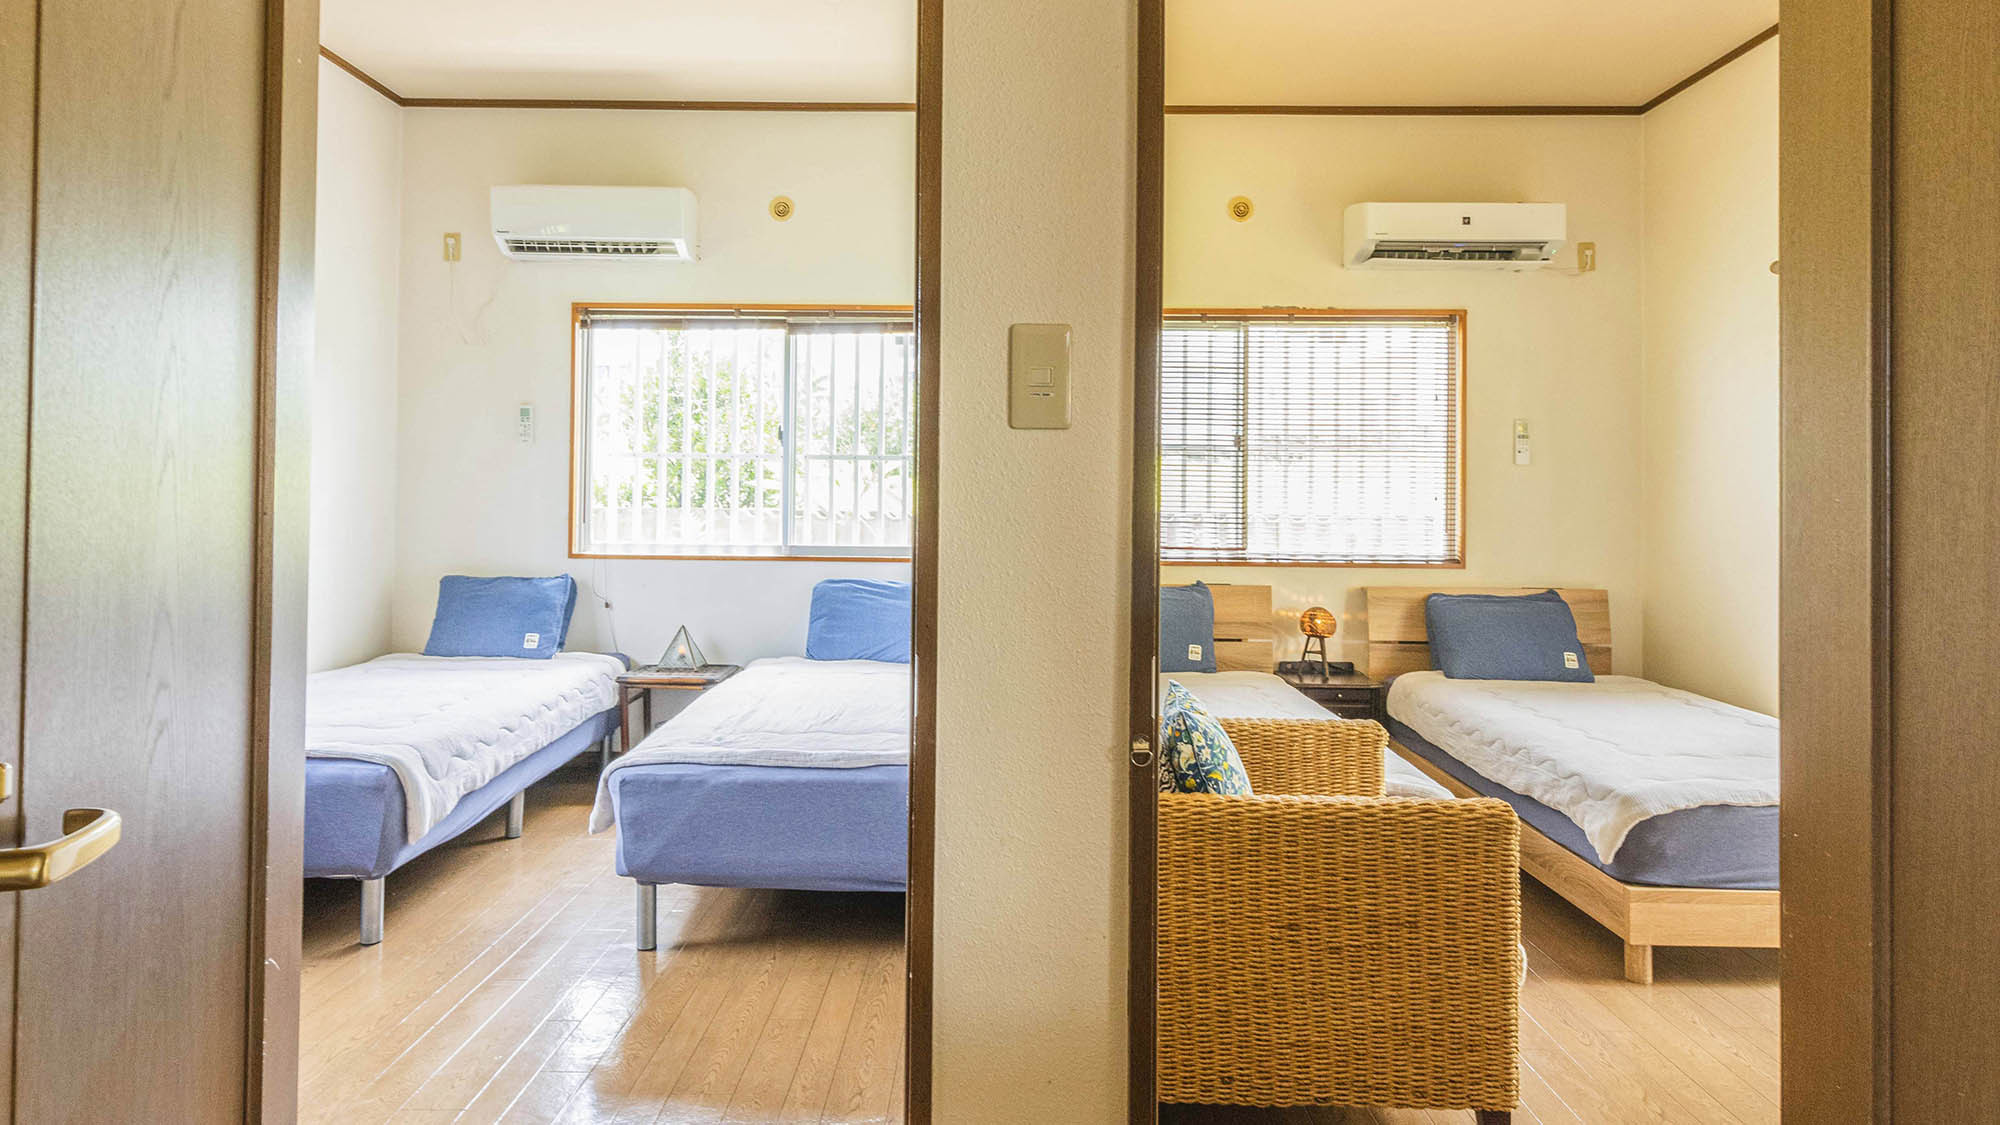 ・【寝室イメージ①】シングルベッド2台、エアコン完備。落ち着いた雰囲気のお部屋です